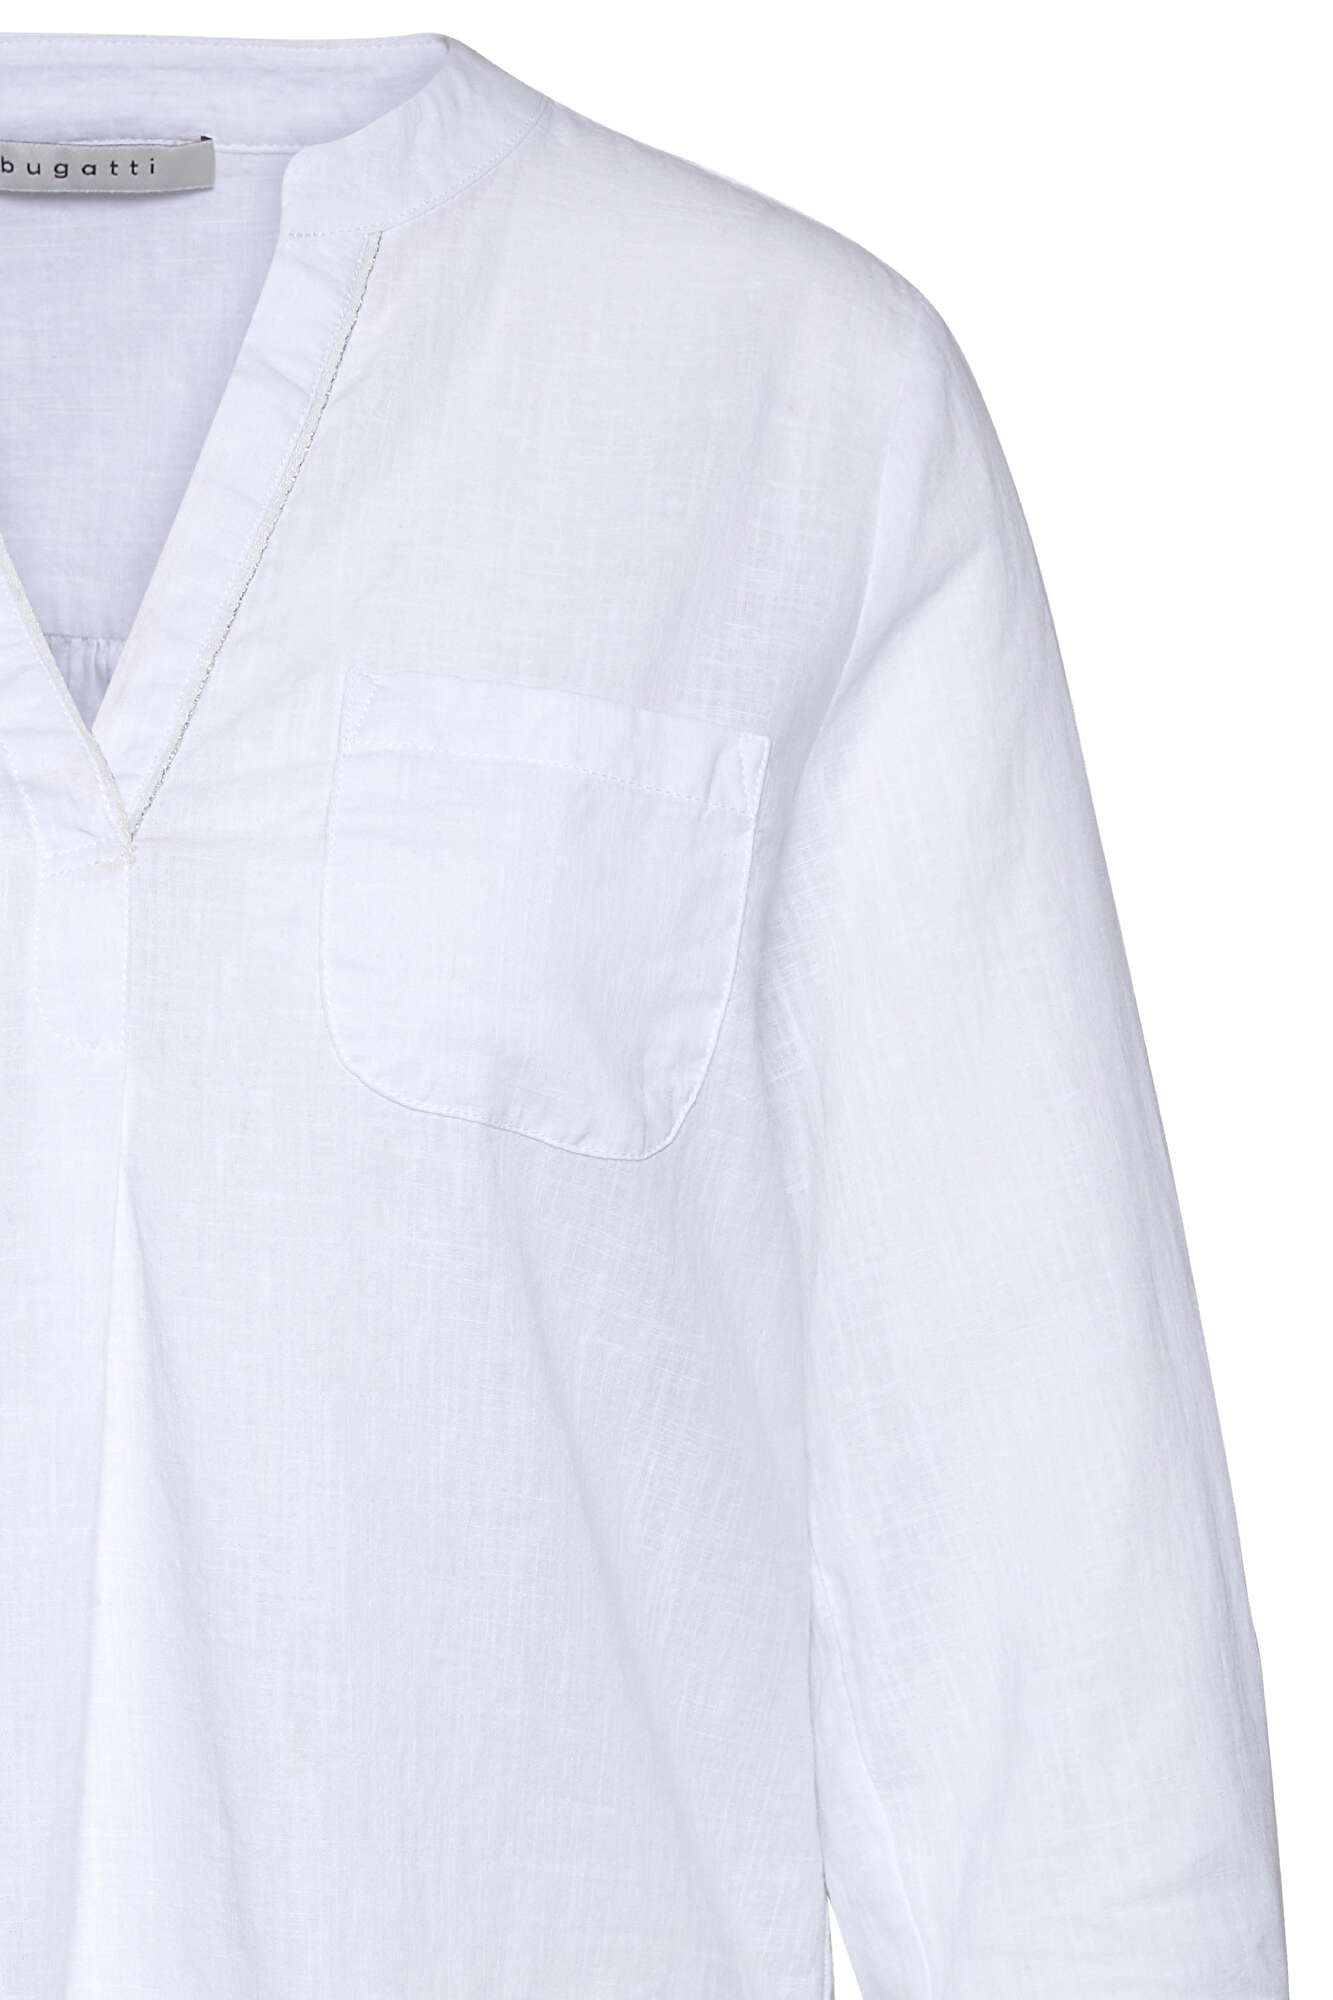 Bluse aus leichtem Leinen-Baumwoll-Mix weiß bugatti in 